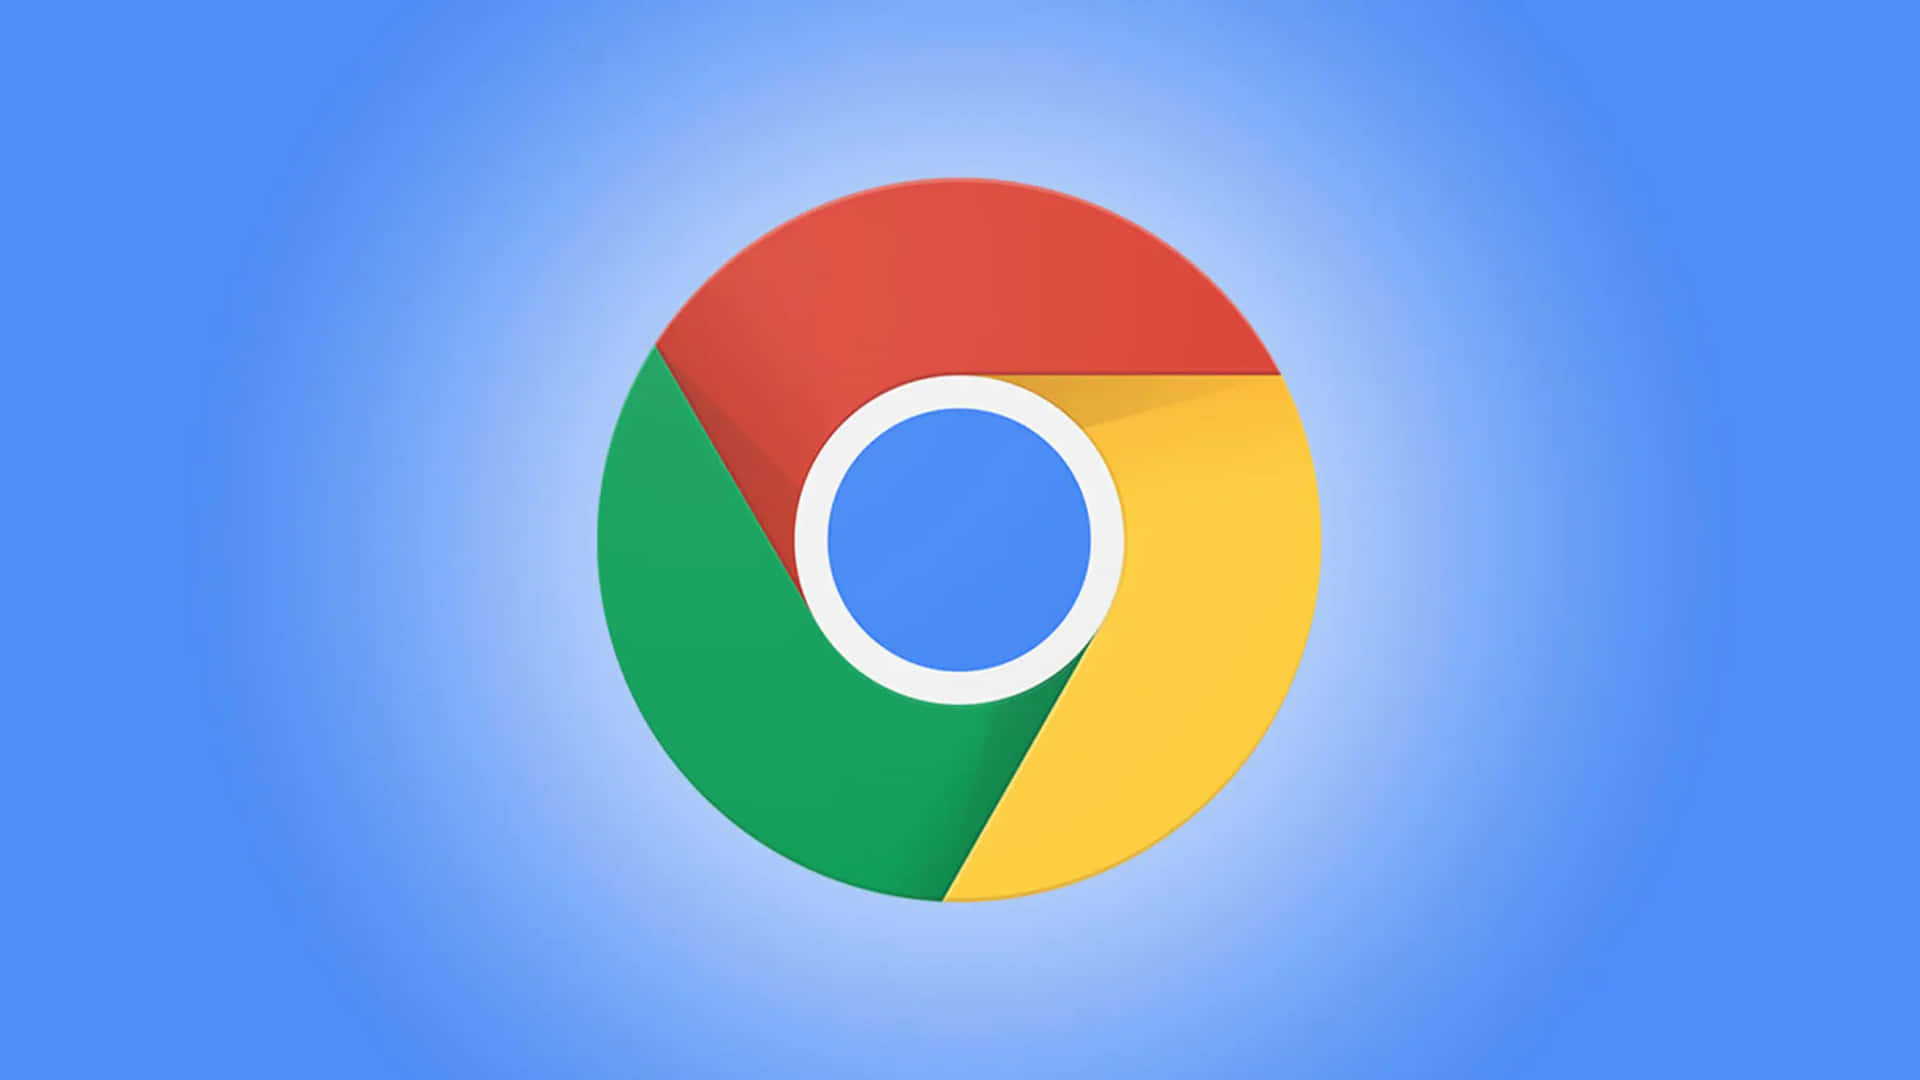 Holensie Das Beste Aus Ihrem Web-browsing-erlebnis Mit Google Chrome Heraus.